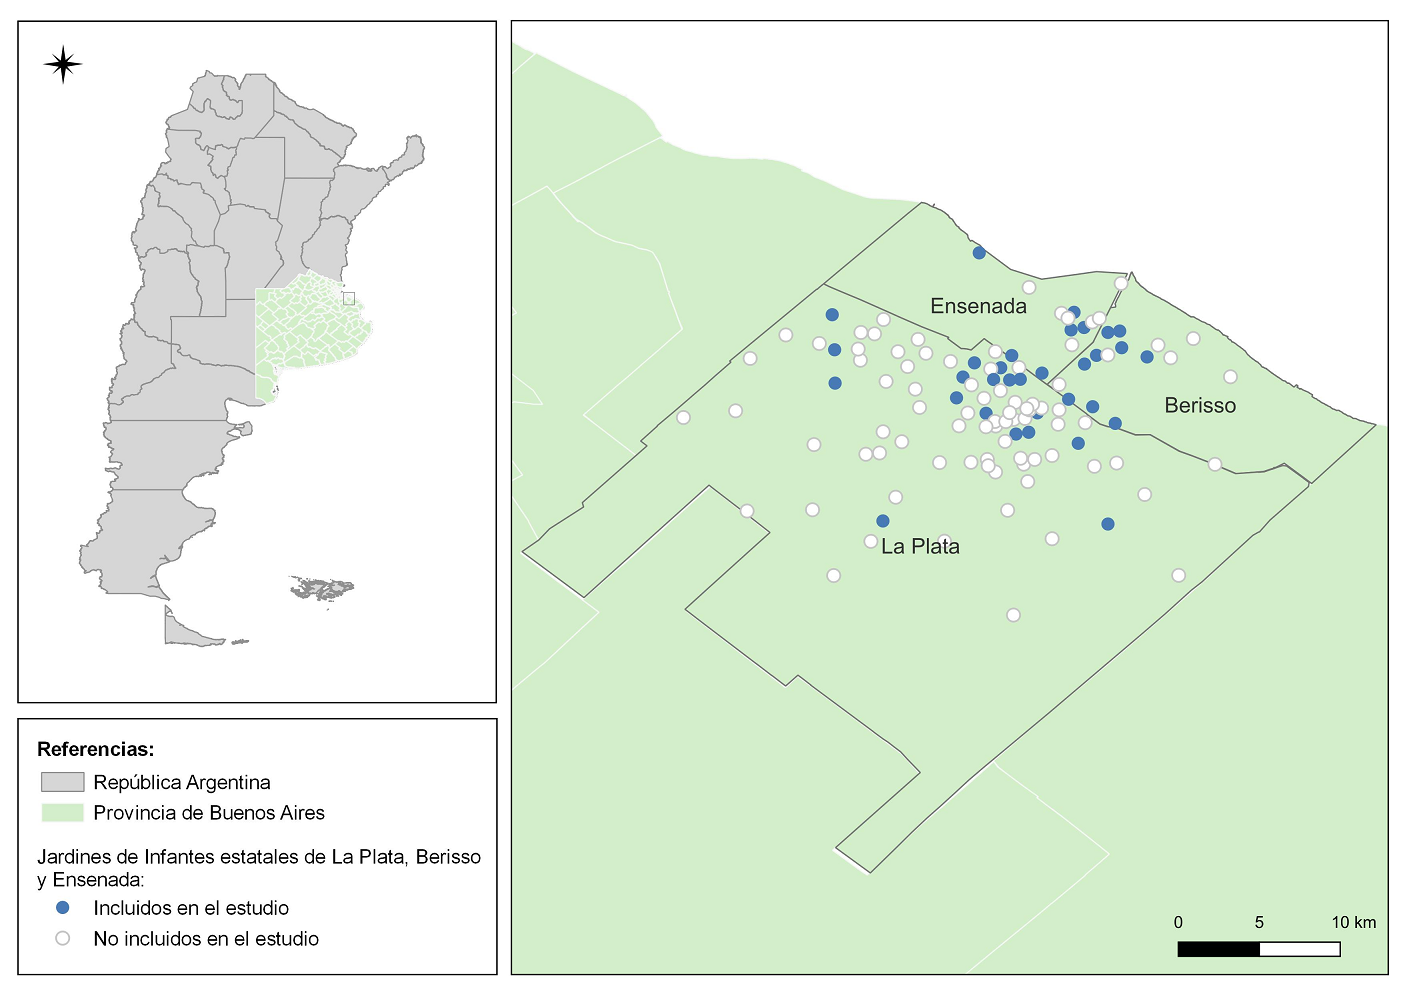 Distribución territorial de Jardines de Infantes estatales de La Plata, Berisso y Ensenada